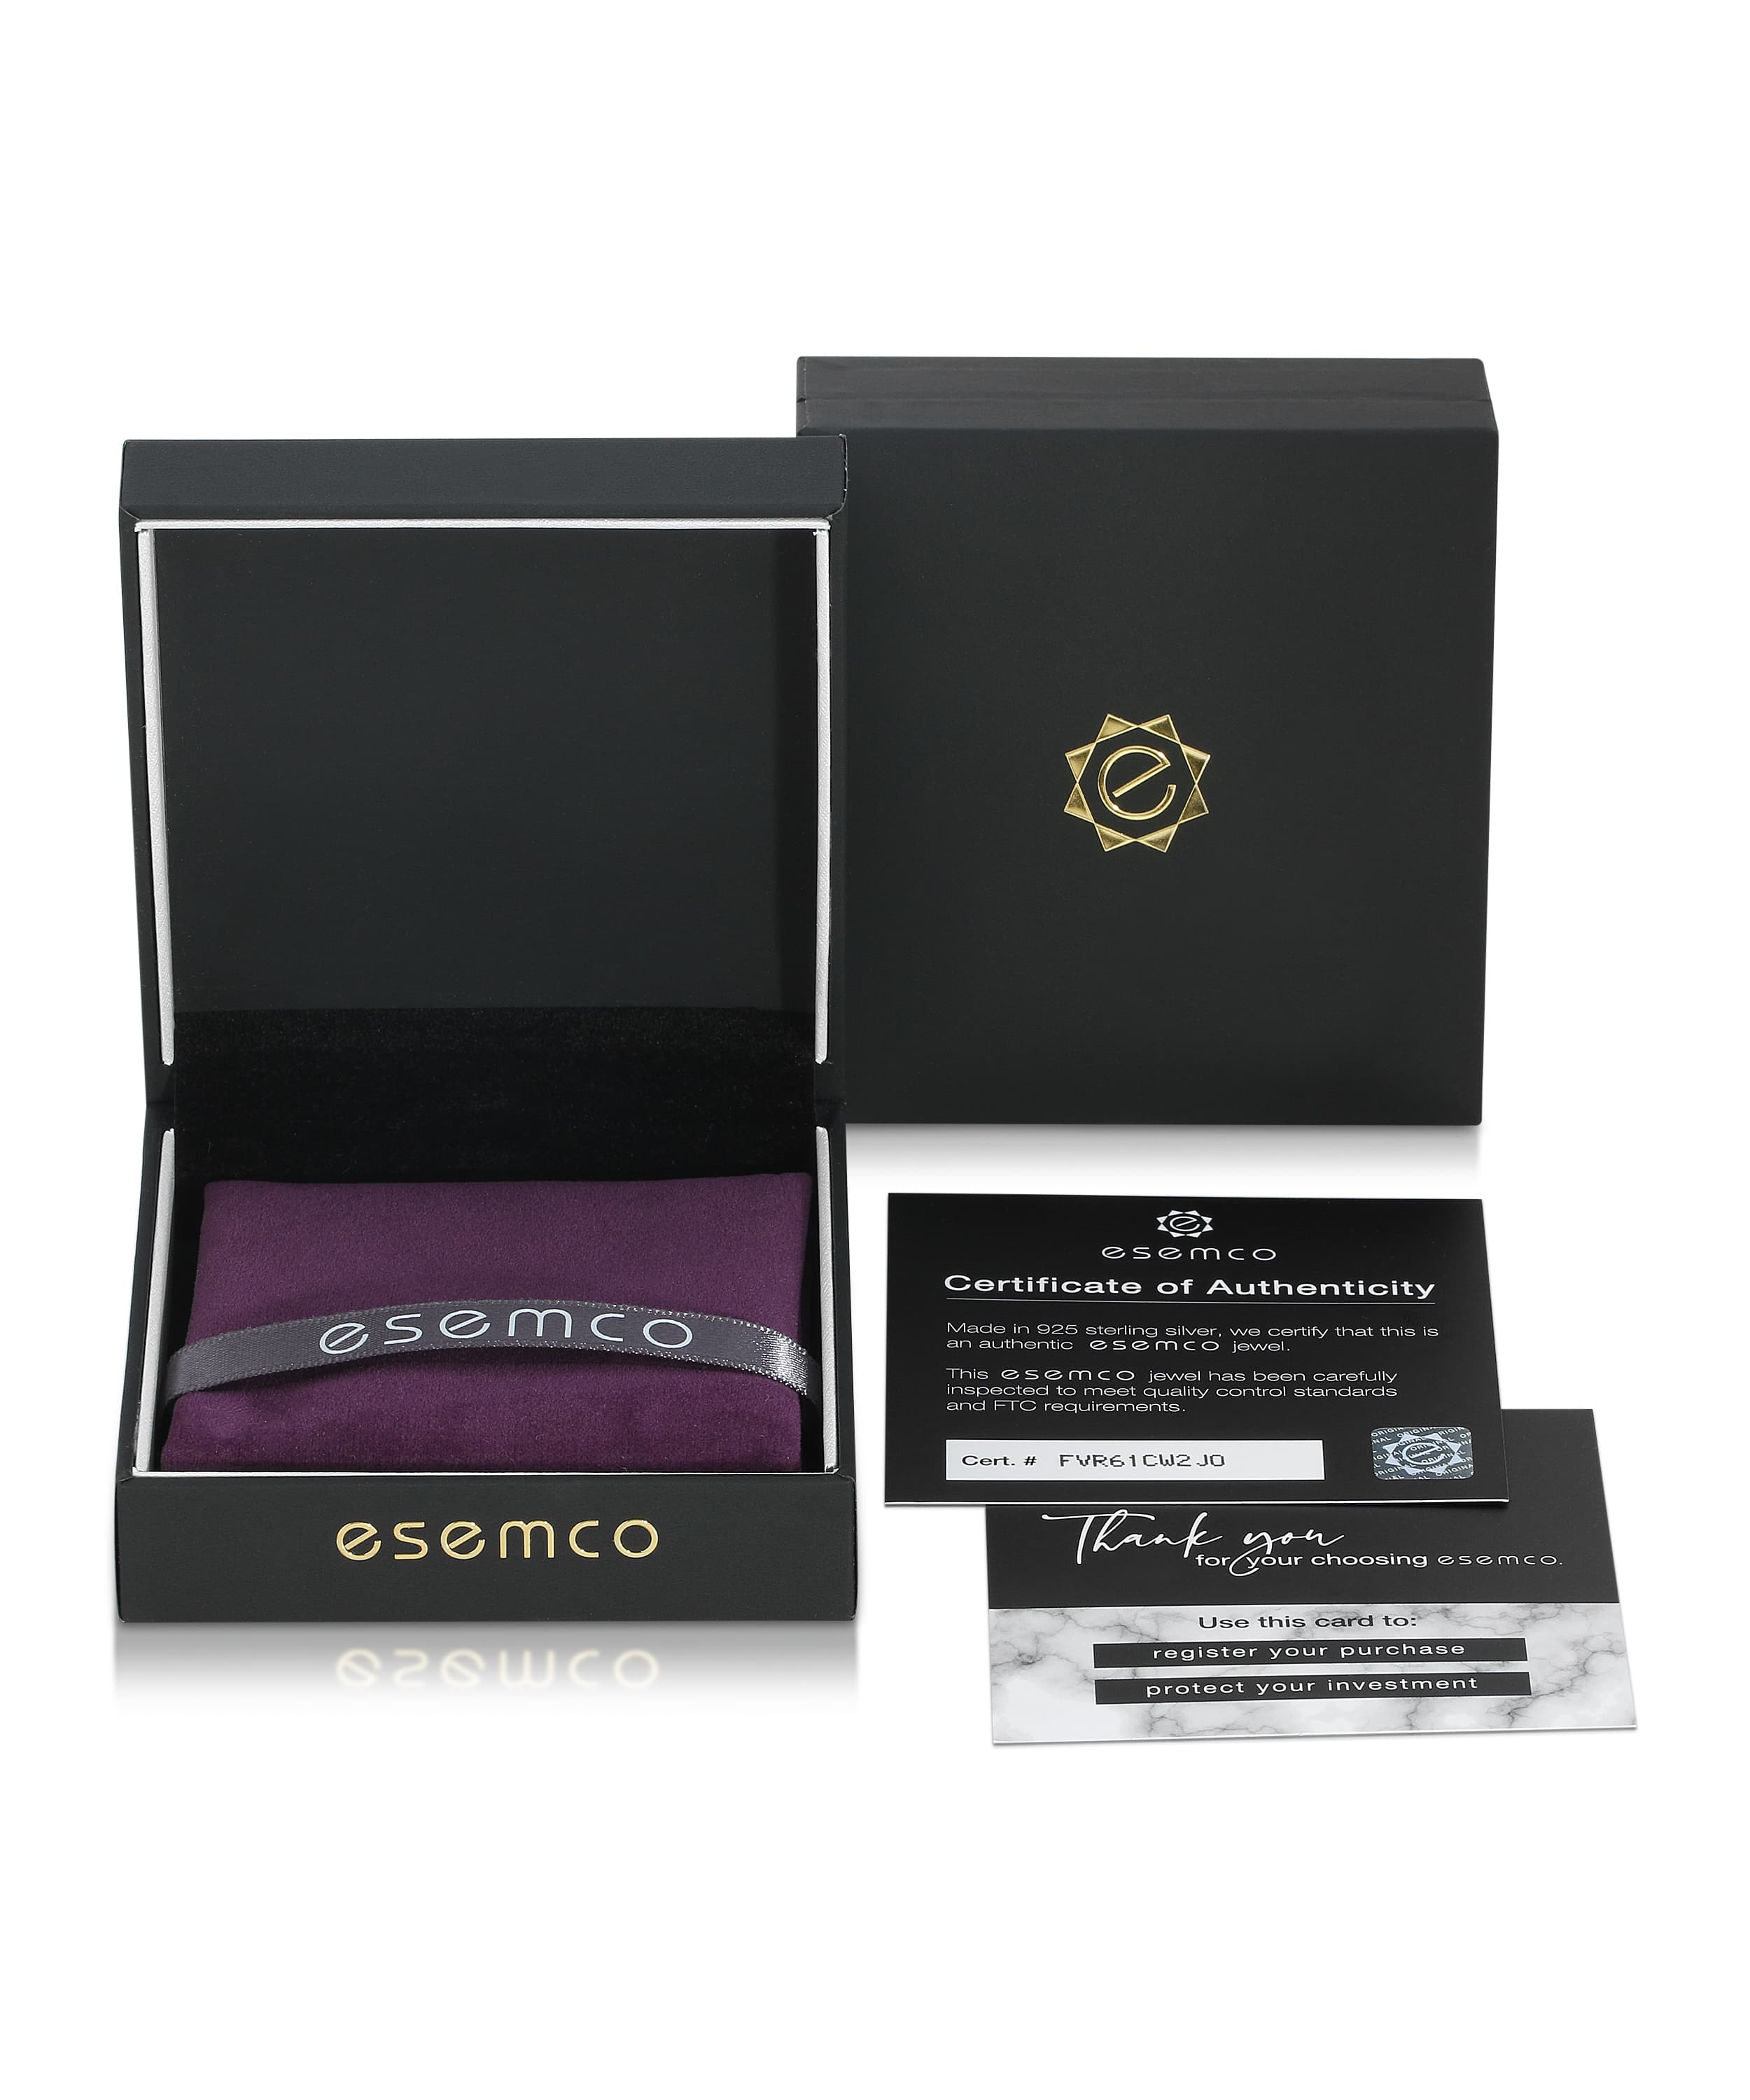 ESEMCO Diamond 18k White Gold Letter D Initial Open Ring View 4